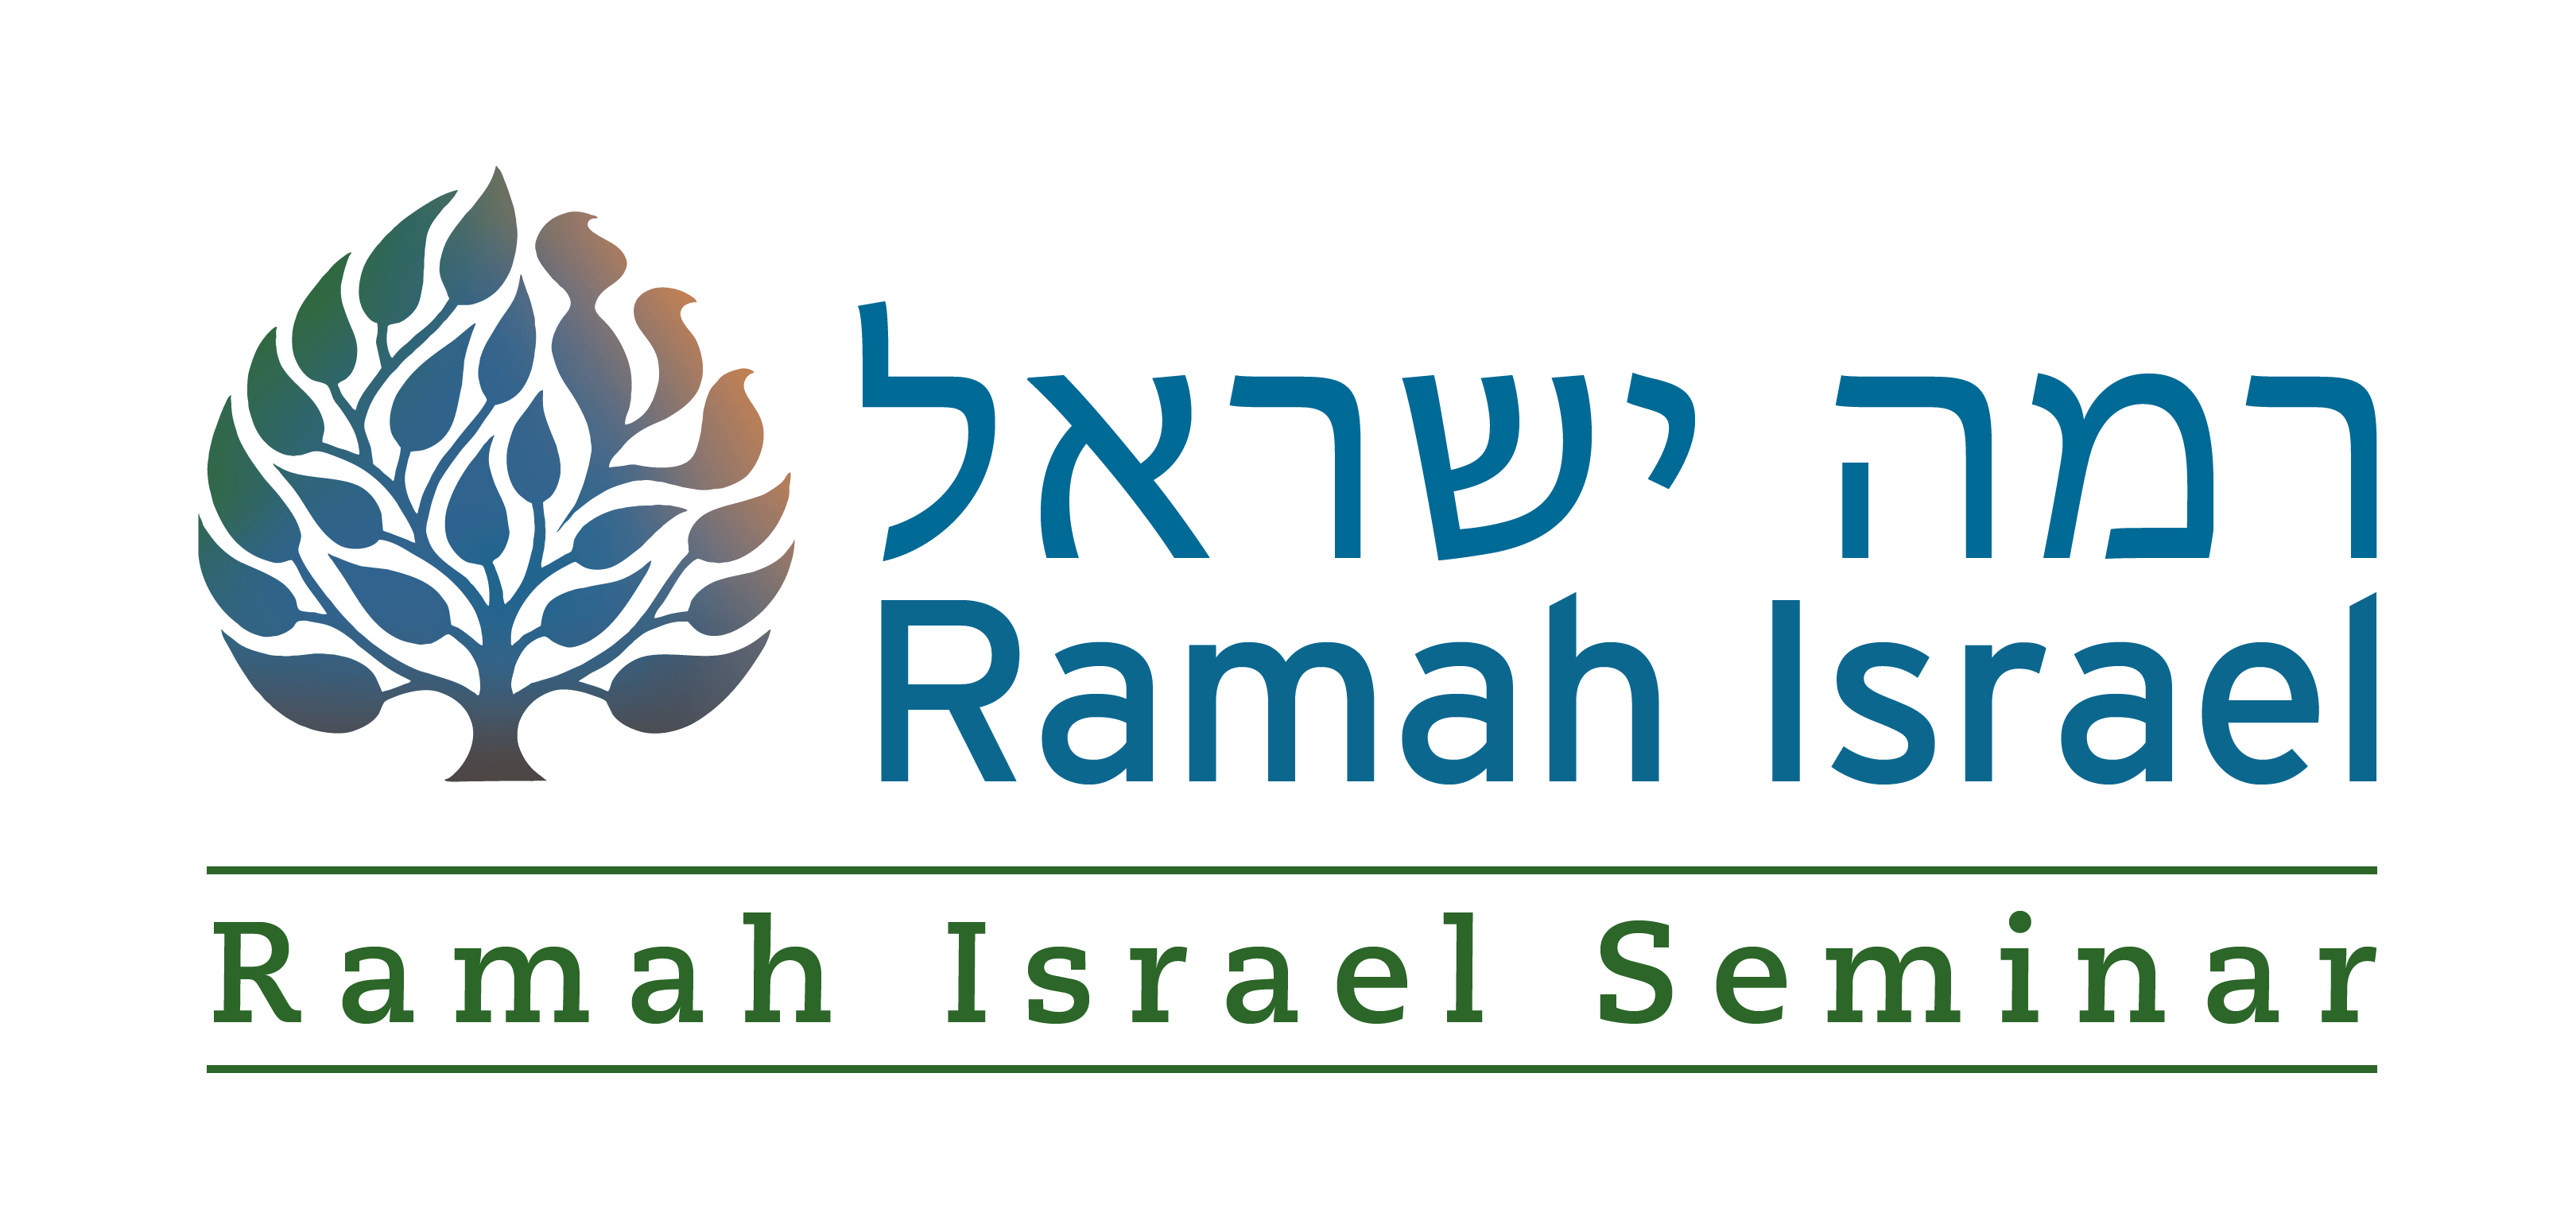 Ramah Logo - Seminar Programs in Israel | Ramah Israel Seminar